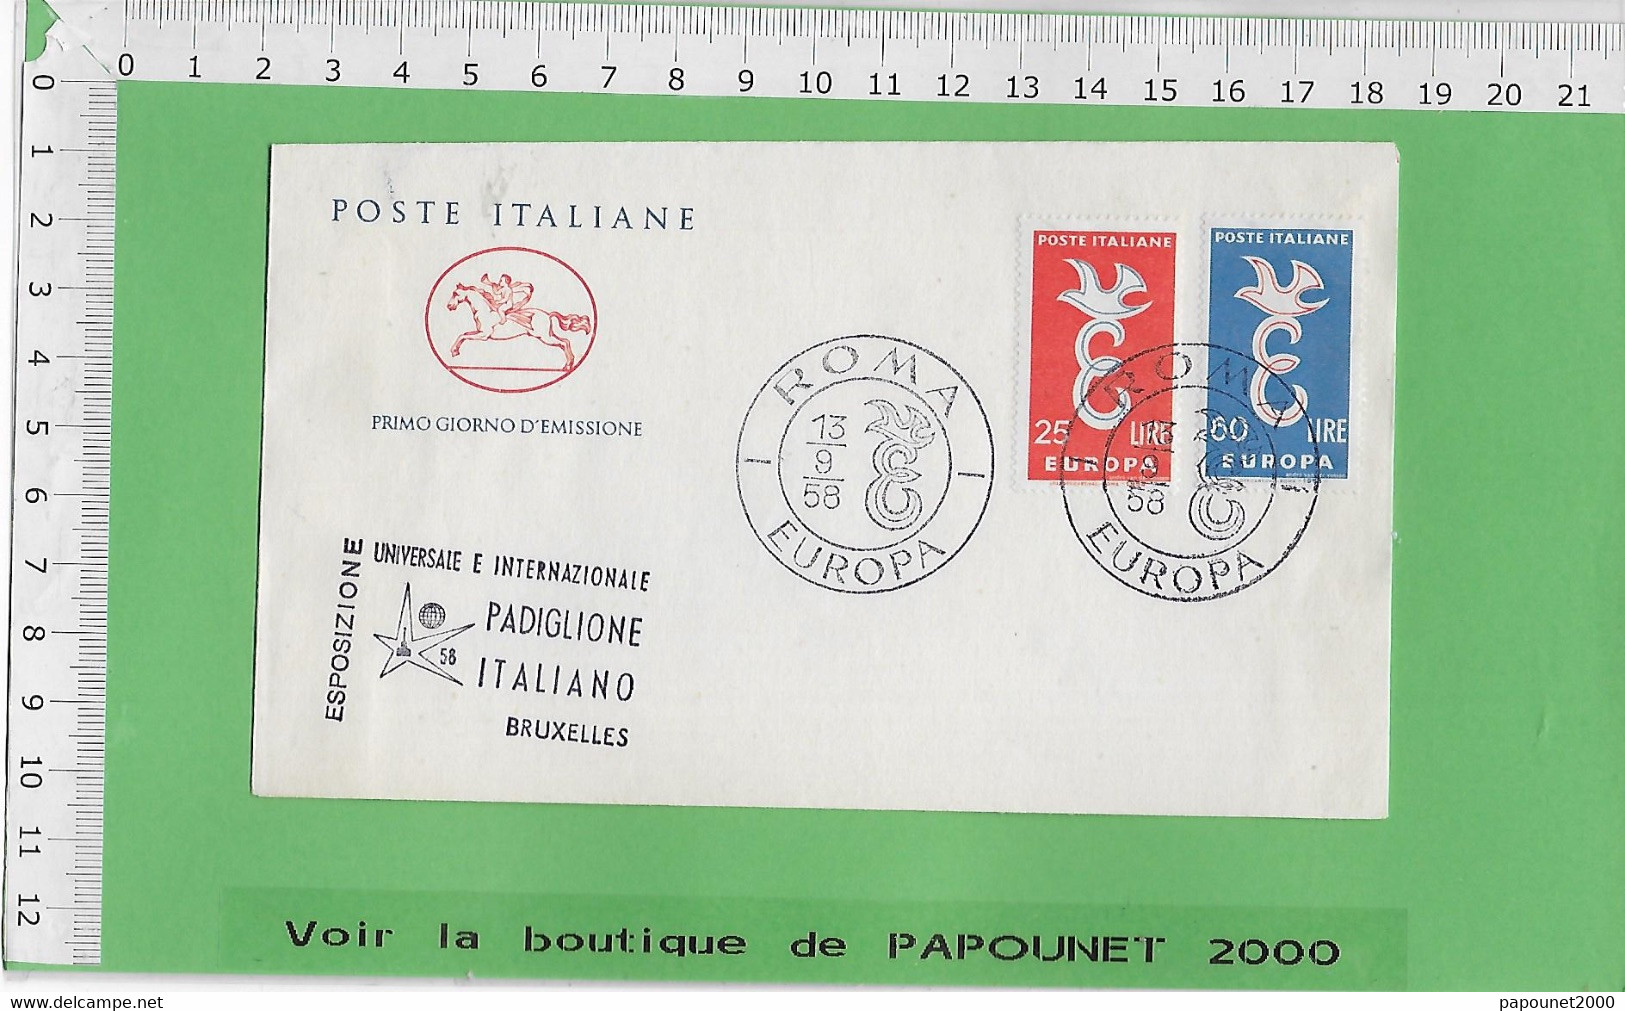 02578 - E BE04 1000-EXPO 58 : Timbre*Enveloppe / PRIMO GIORNO D EMISSIONE: PAVILLON ITALIEN - 1958 – Bruselas (Bélgica)